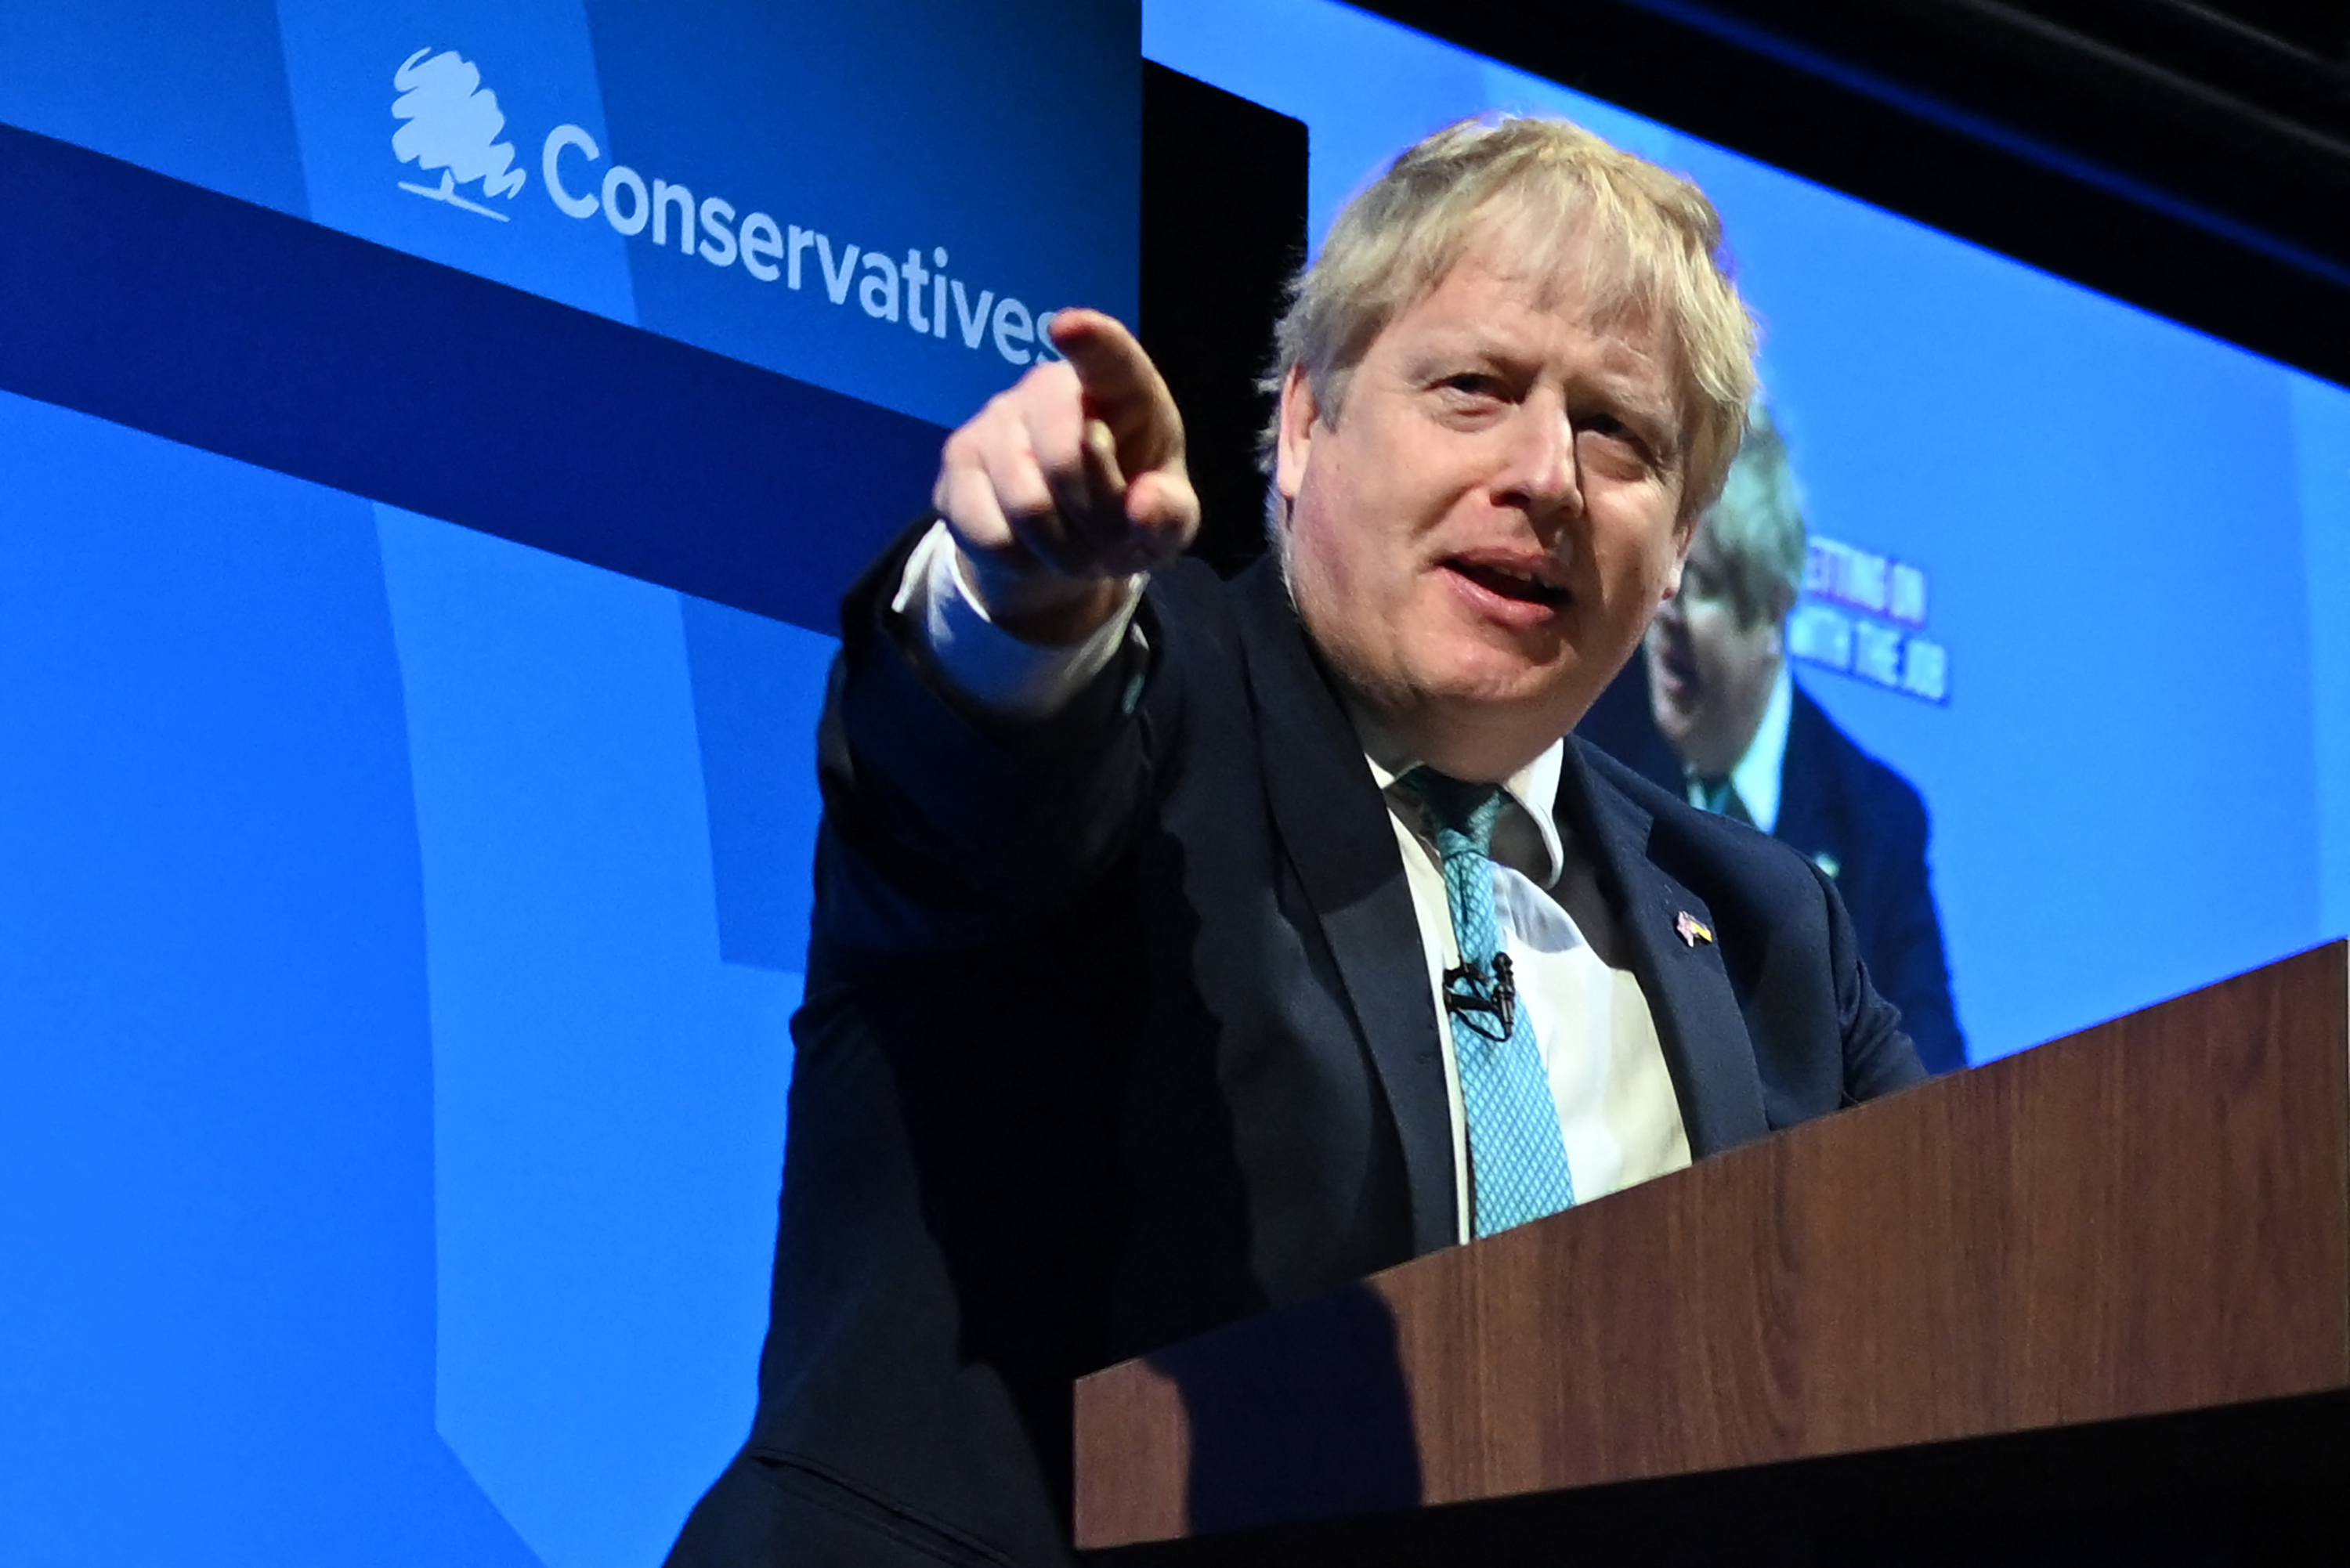 Boris Johnson nemhogy a második, a harmadik ciklusára készül